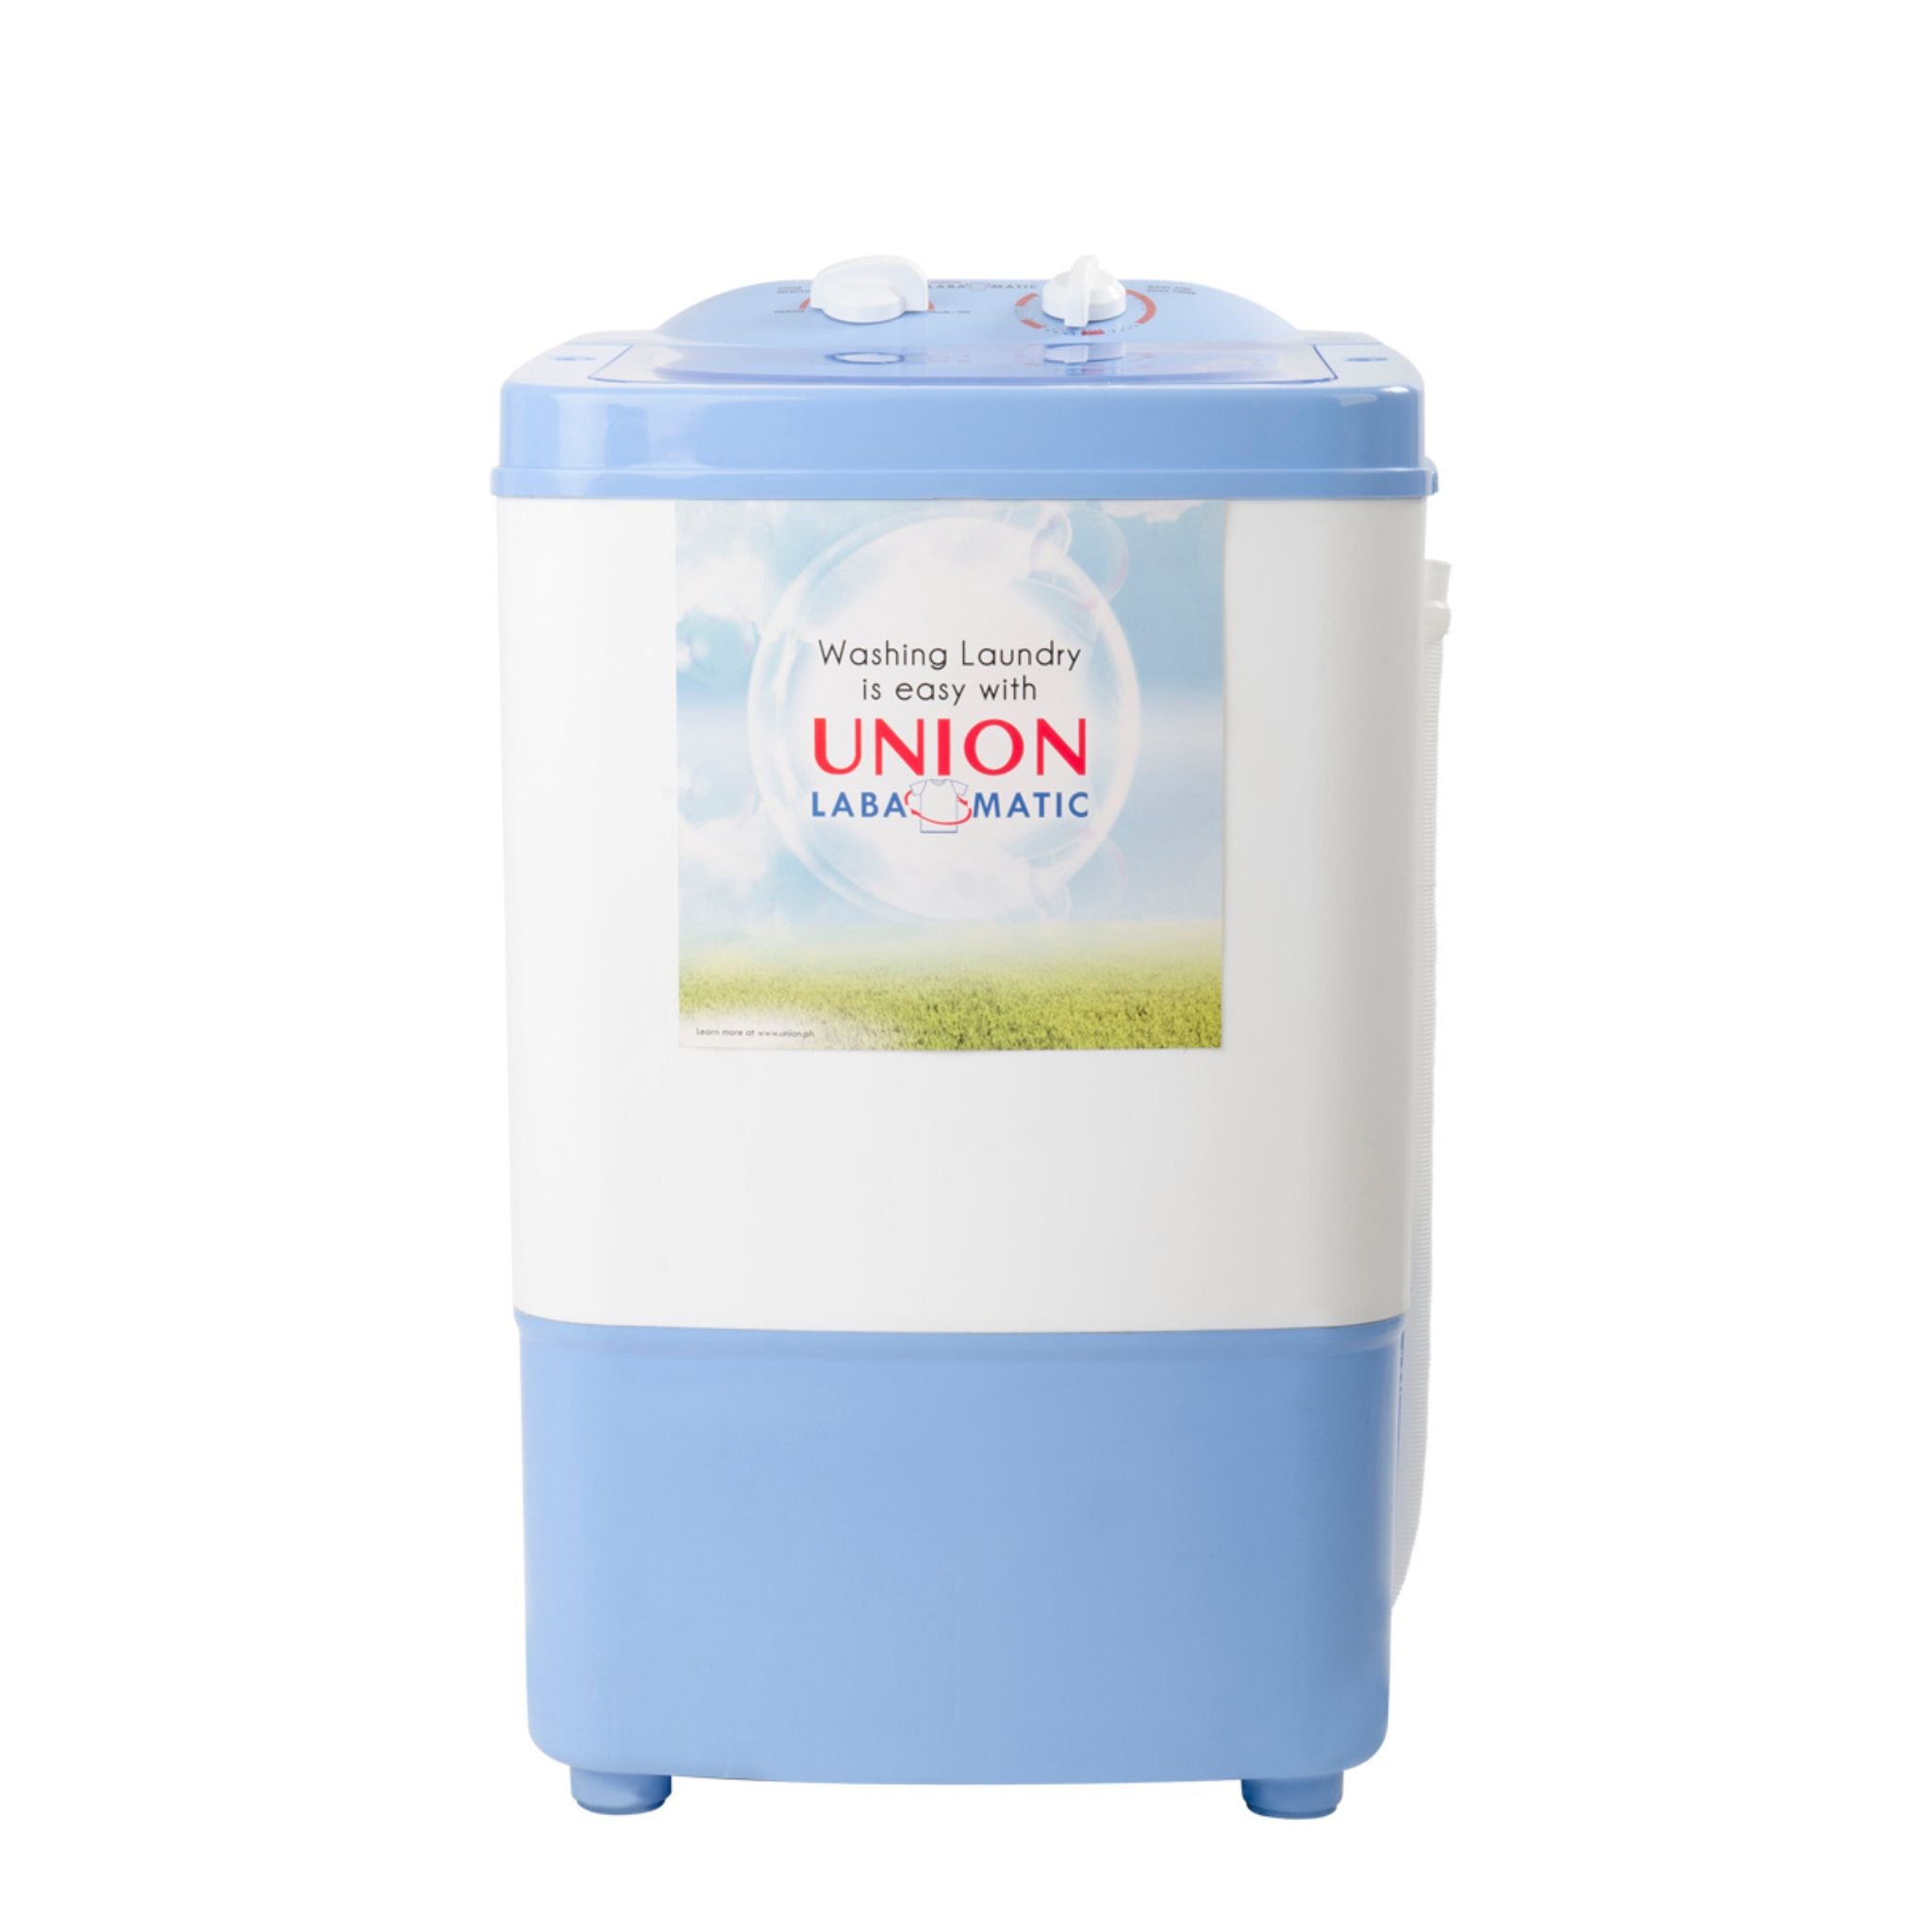 UNION UGWM 90 9.0kg Single Tub Washing Machine Union